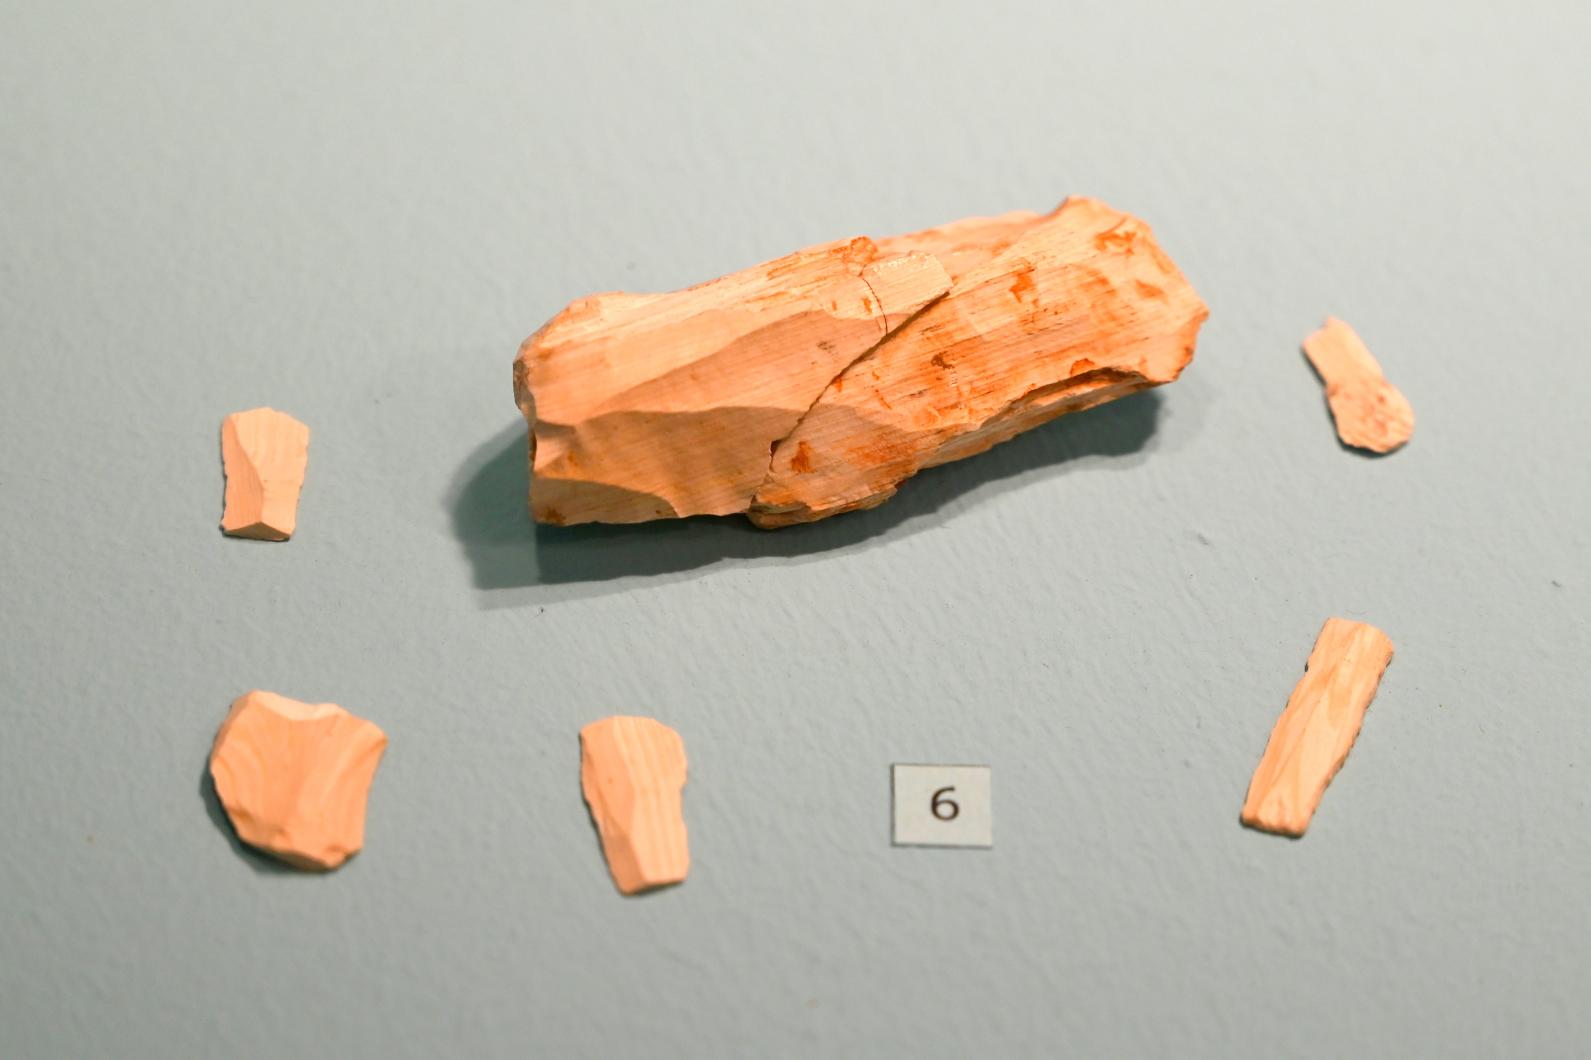 Kern, 23000 v. Chr.